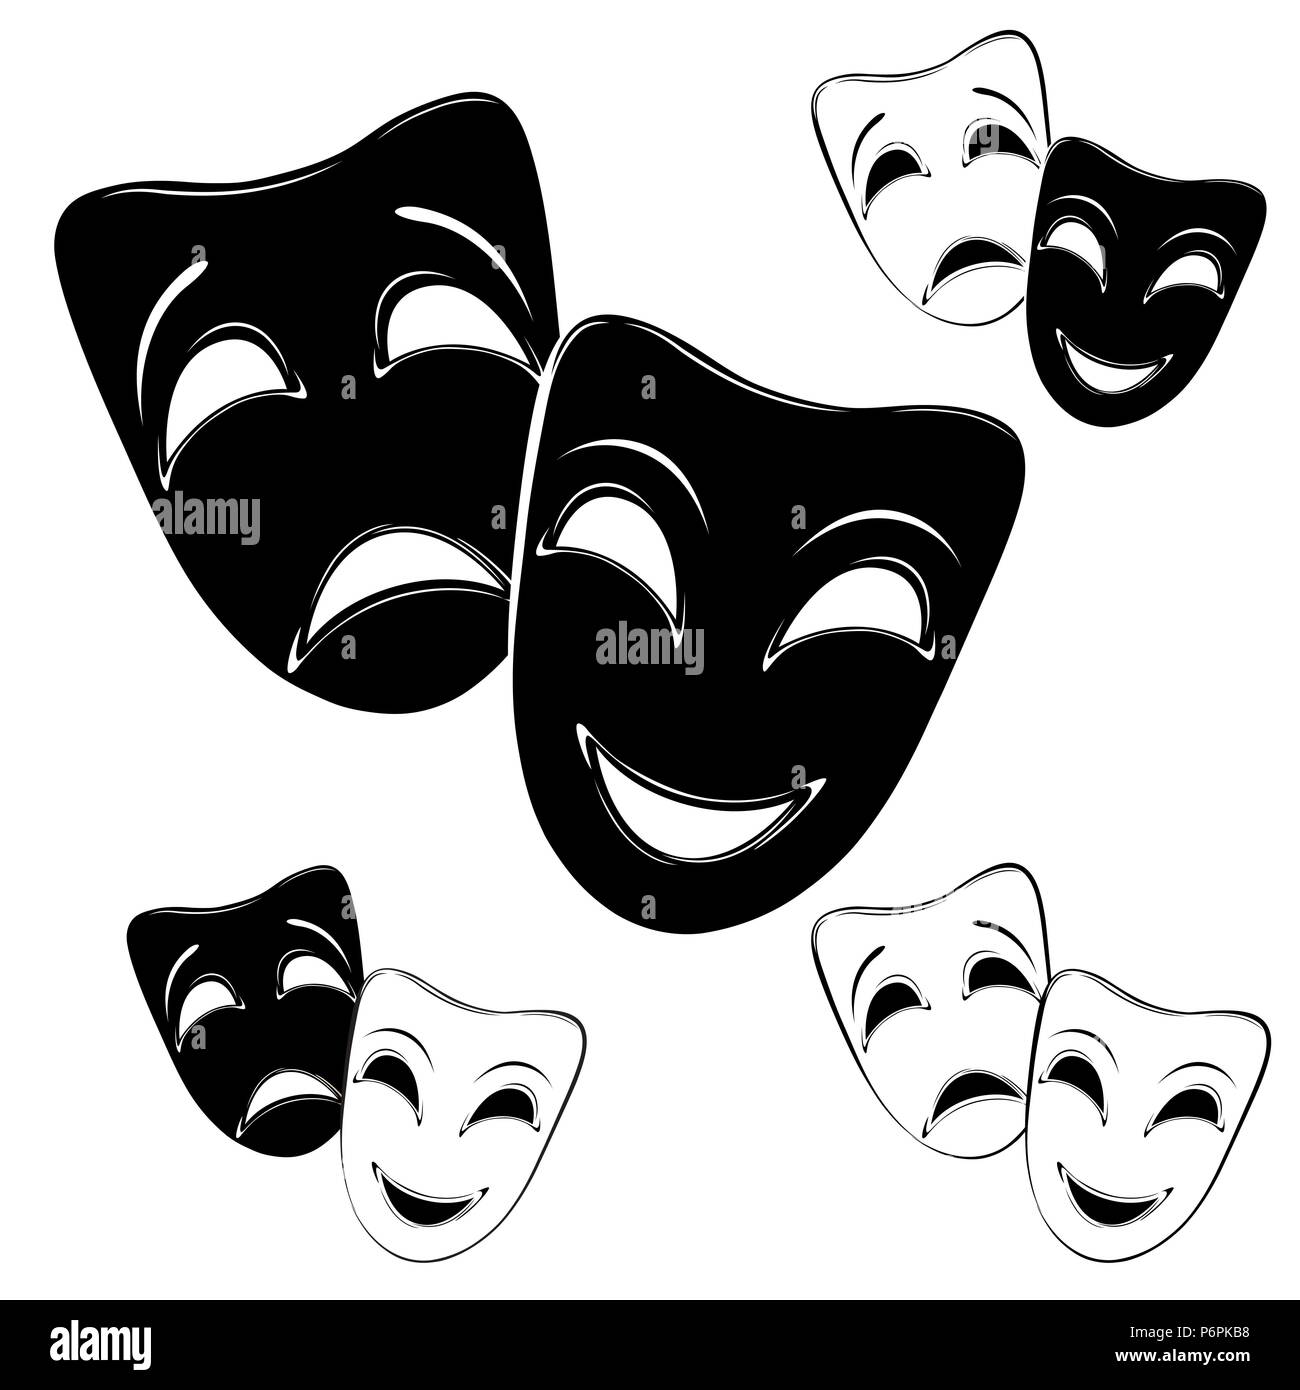 Sammlung von Theater Masken auf einem weißen Hintergrund. Stock Vektor